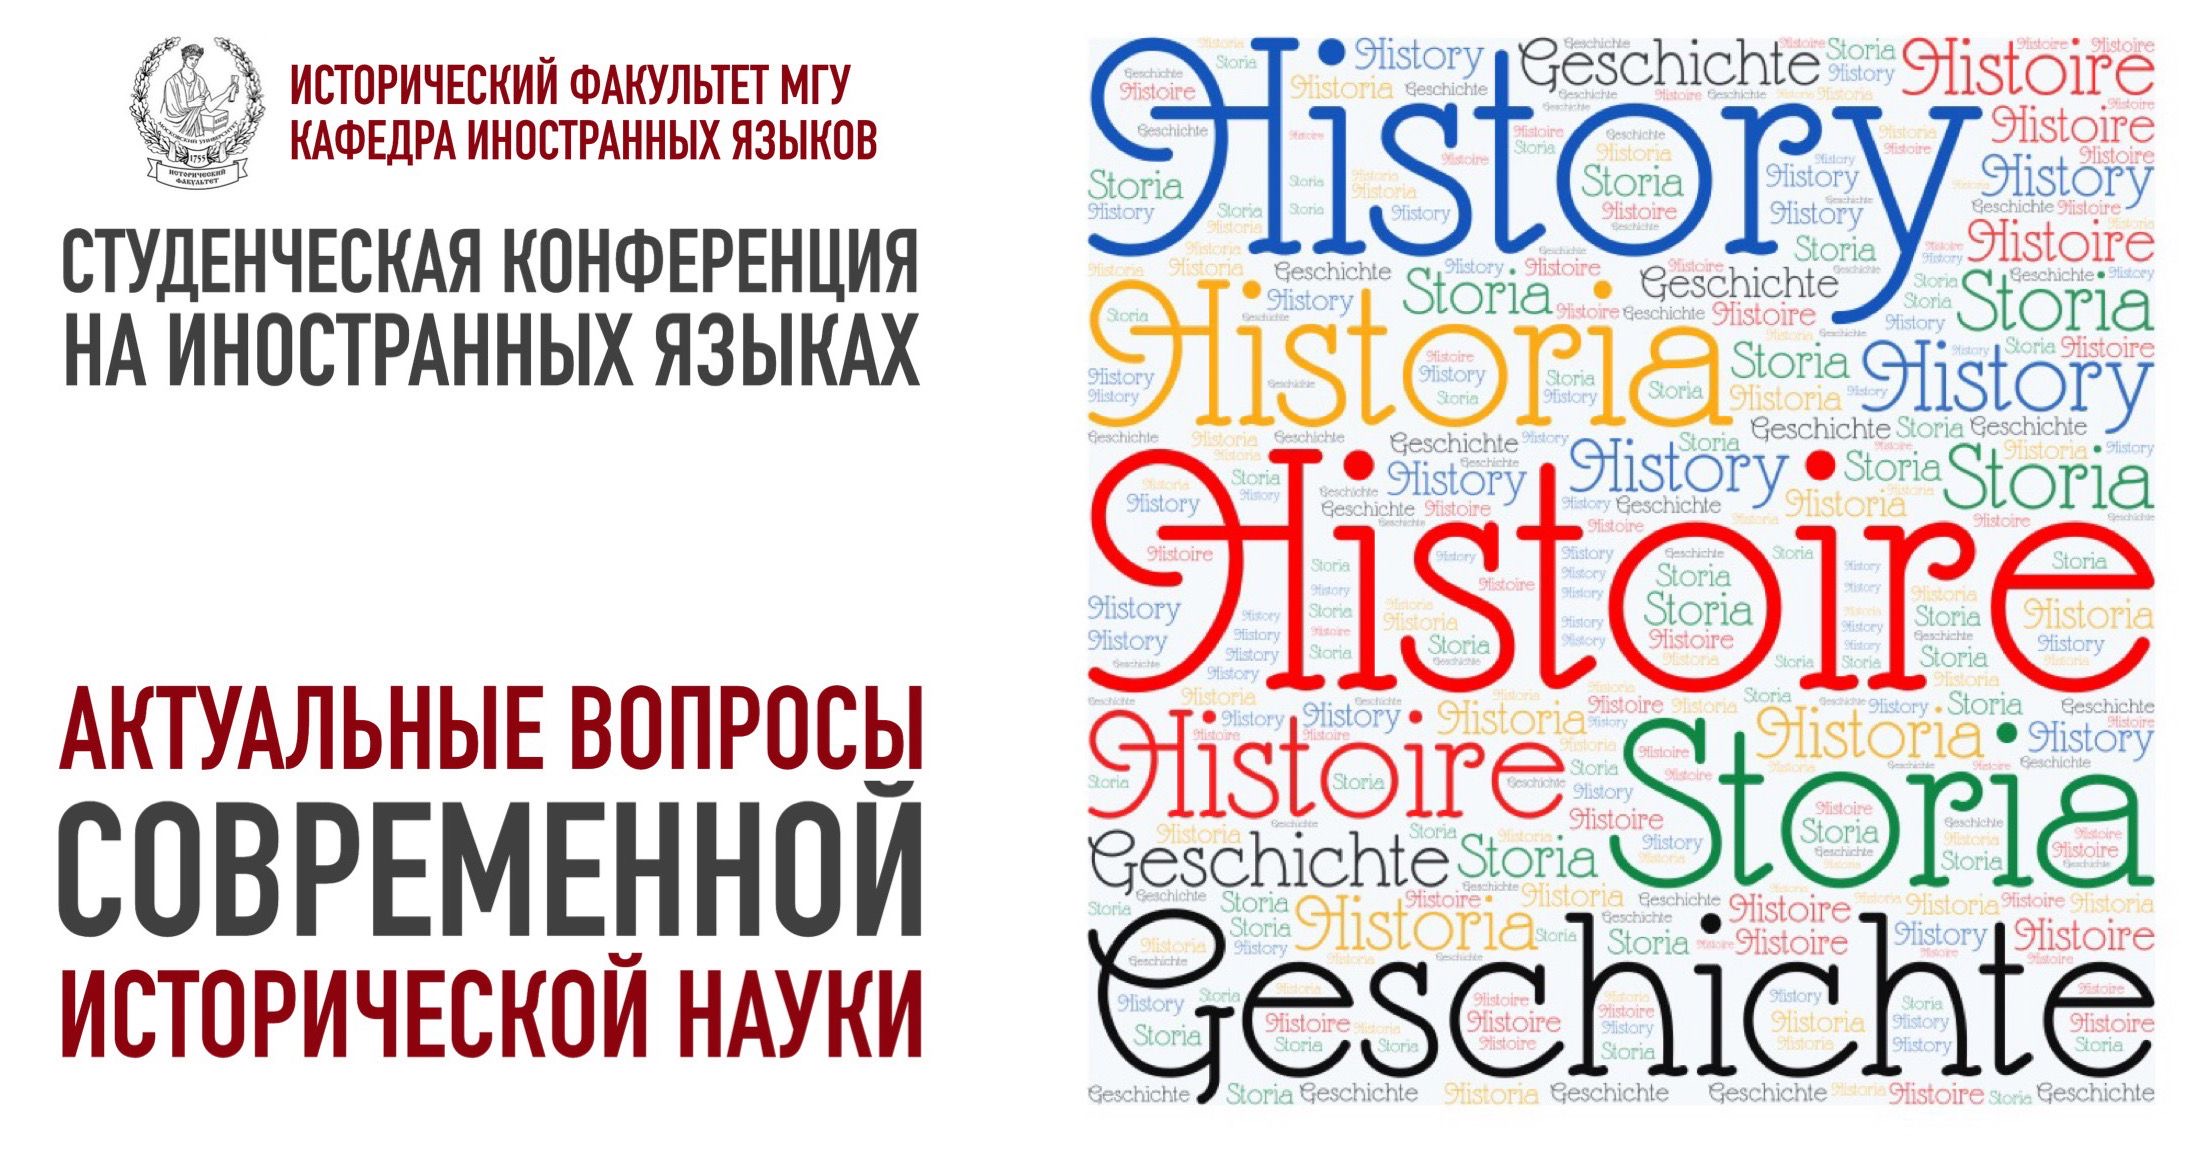 Студенческая конференция на иностранных языках "Актуальные вопросы современной исторической науки"